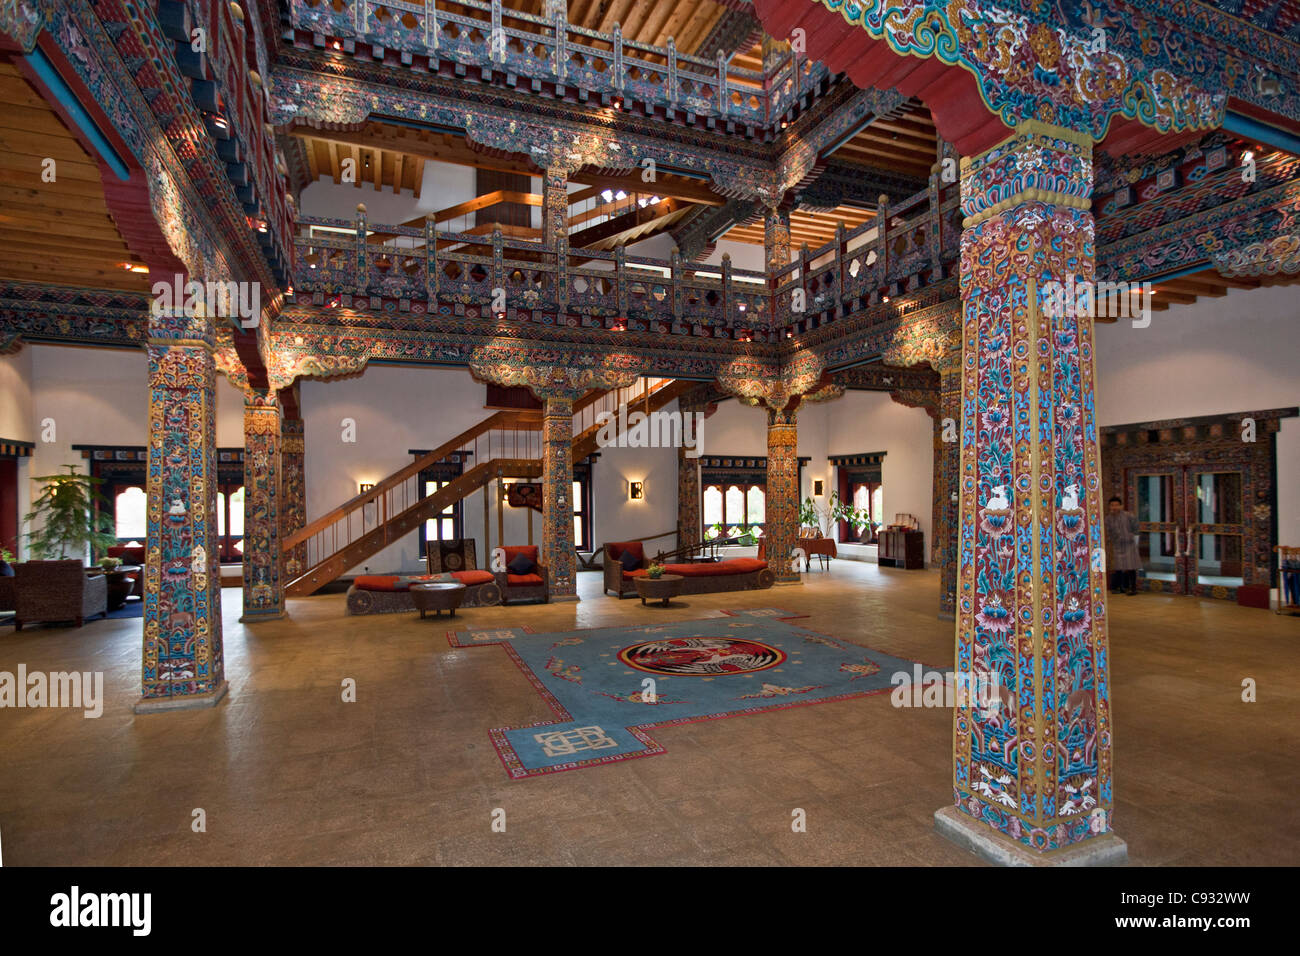 Gli ornati hall del Grand Zhiwa Ling hotel di lusso, a 8 km da Paro nella valle di Paro. Foto Stock